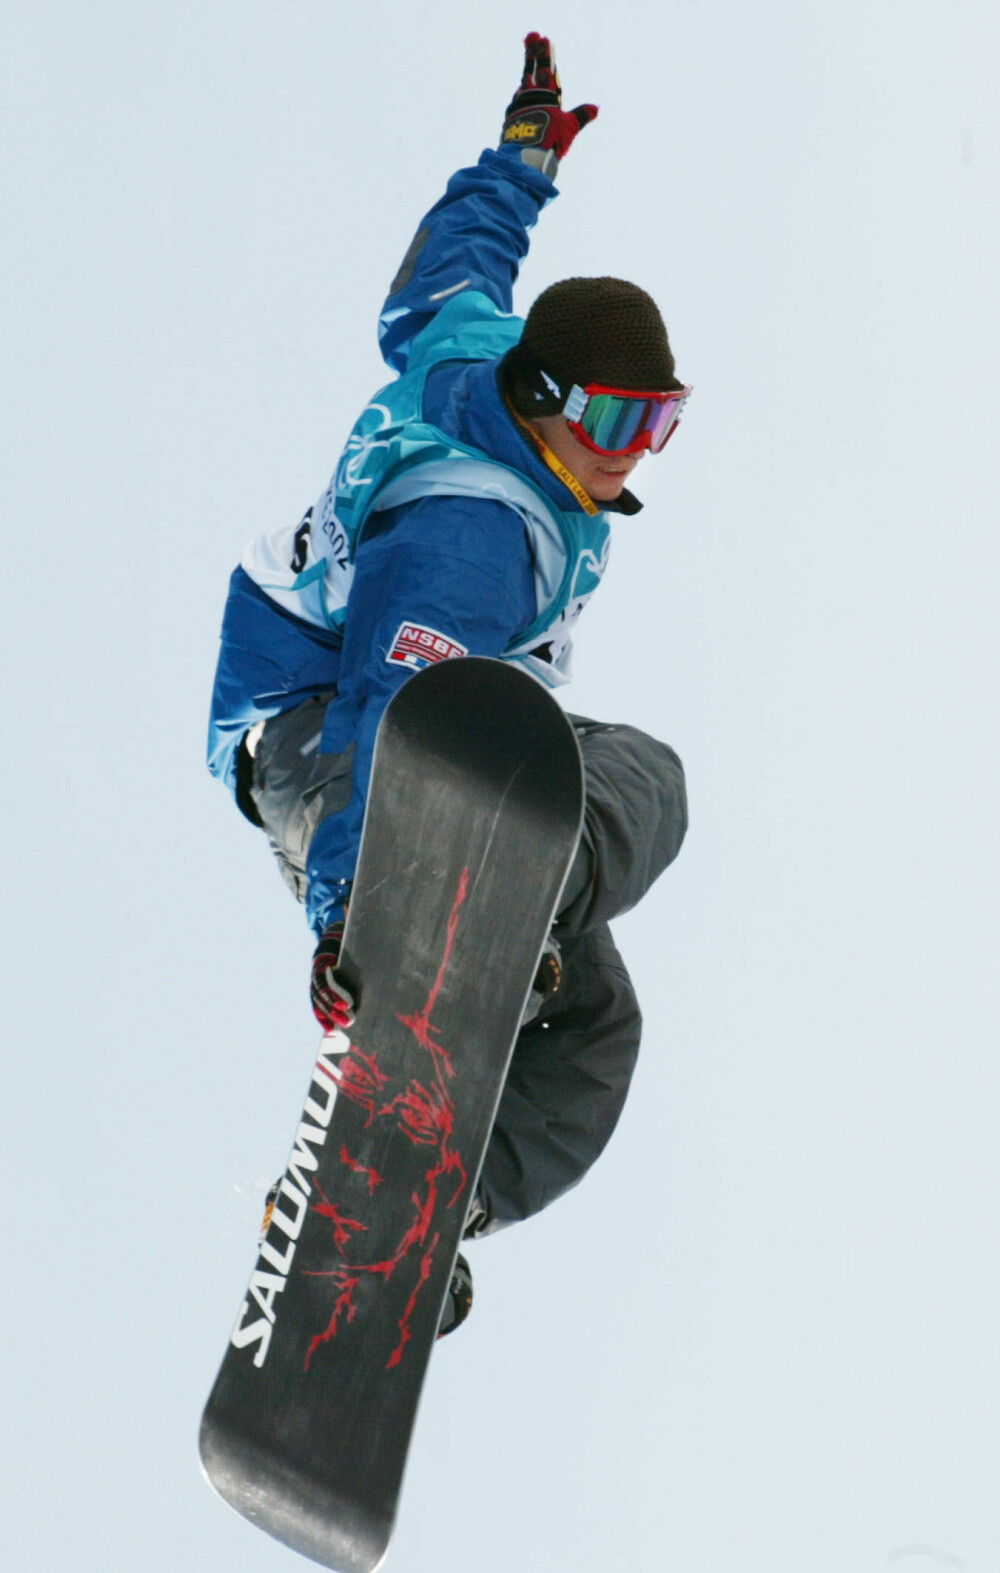 <b>FORTSATT AKTIV:</b> Daniel poengterer at snøbrett er en livsstil og fortsatt en viktig del av hans identitet. Selv om han valgte å legge opp som profesjonell utøver, står han fortsatt mye på snowboard i vinterhalvåret. Her fra da han var aktiv. 